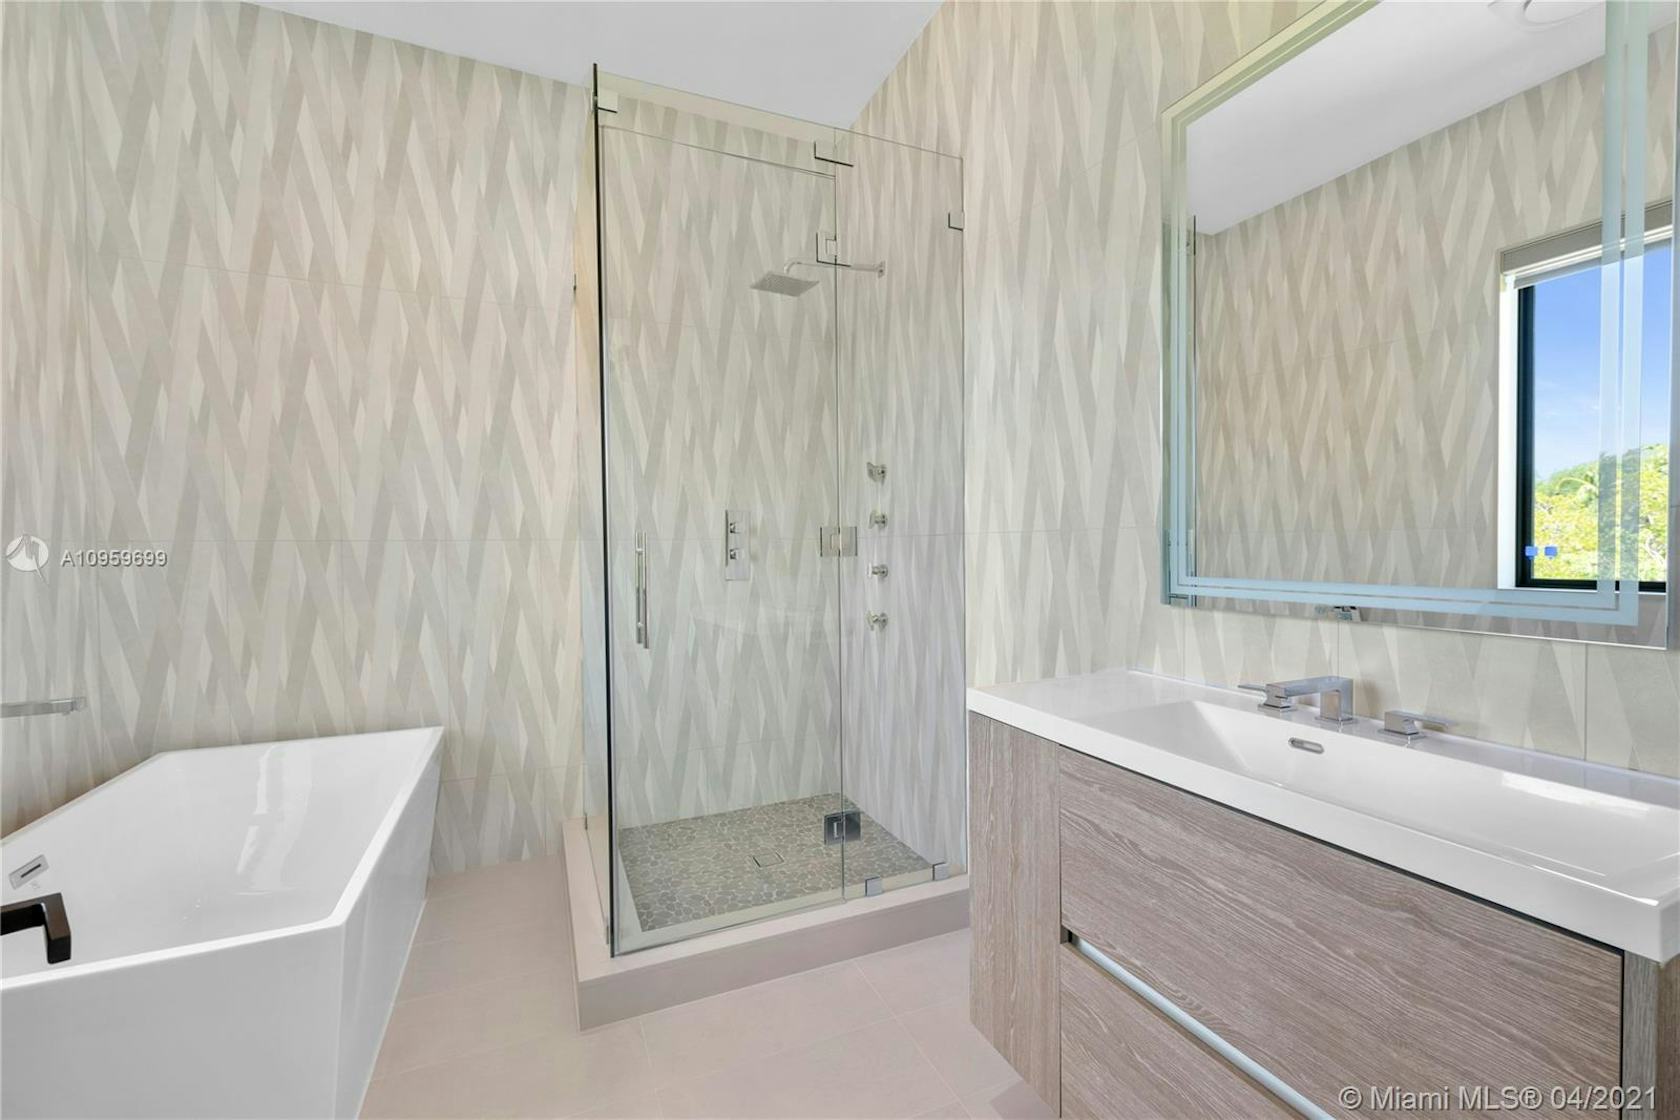 room indoors bathroom bathtub tub shower